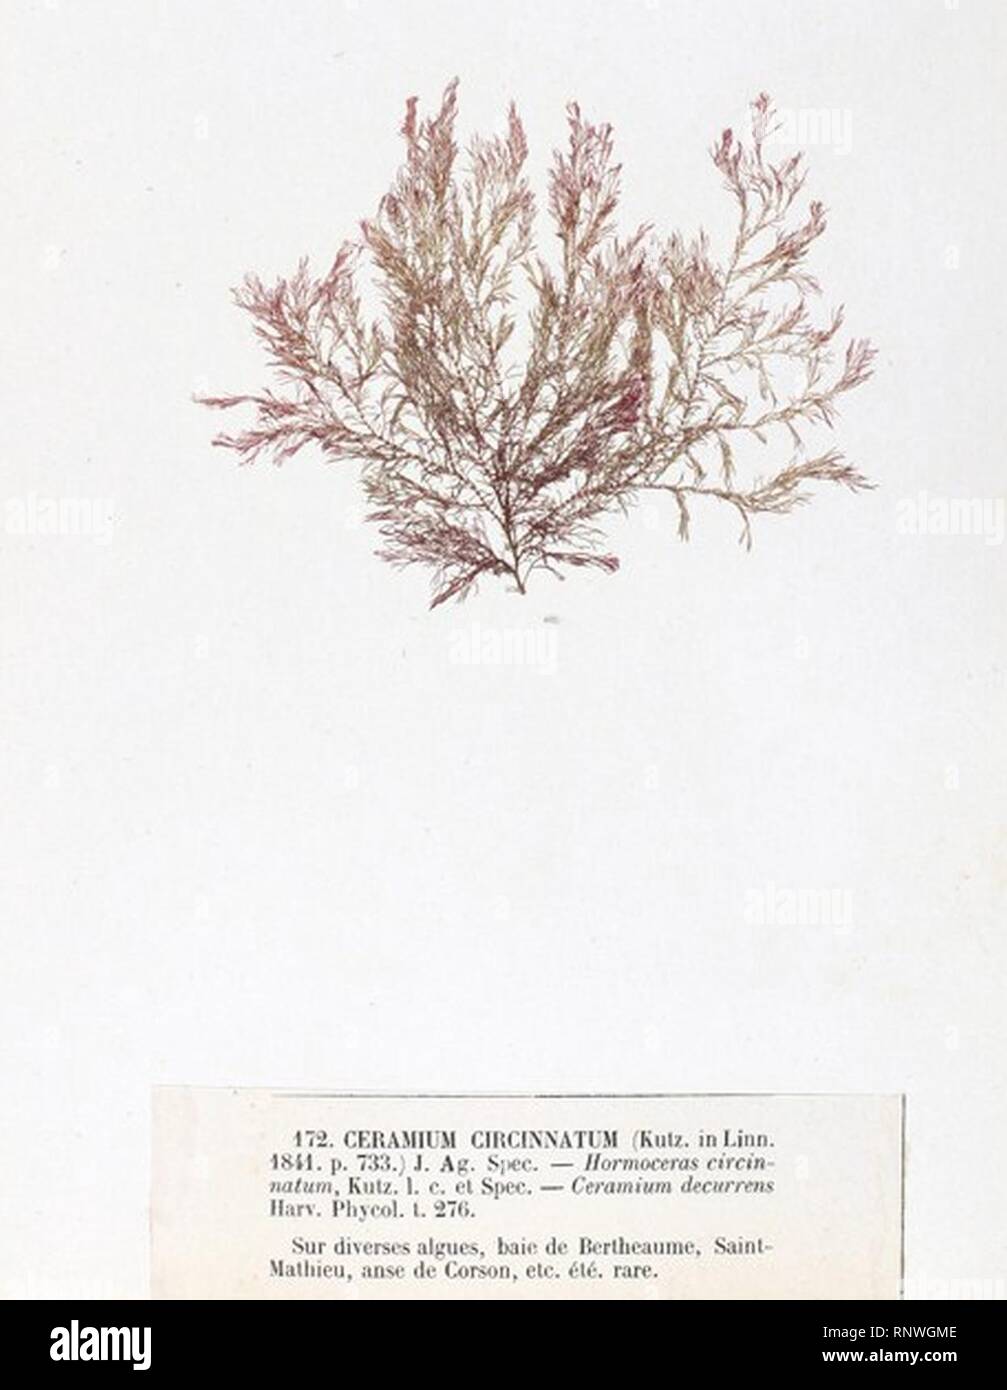 Ceramium circinatum Crouan. Stock Photo